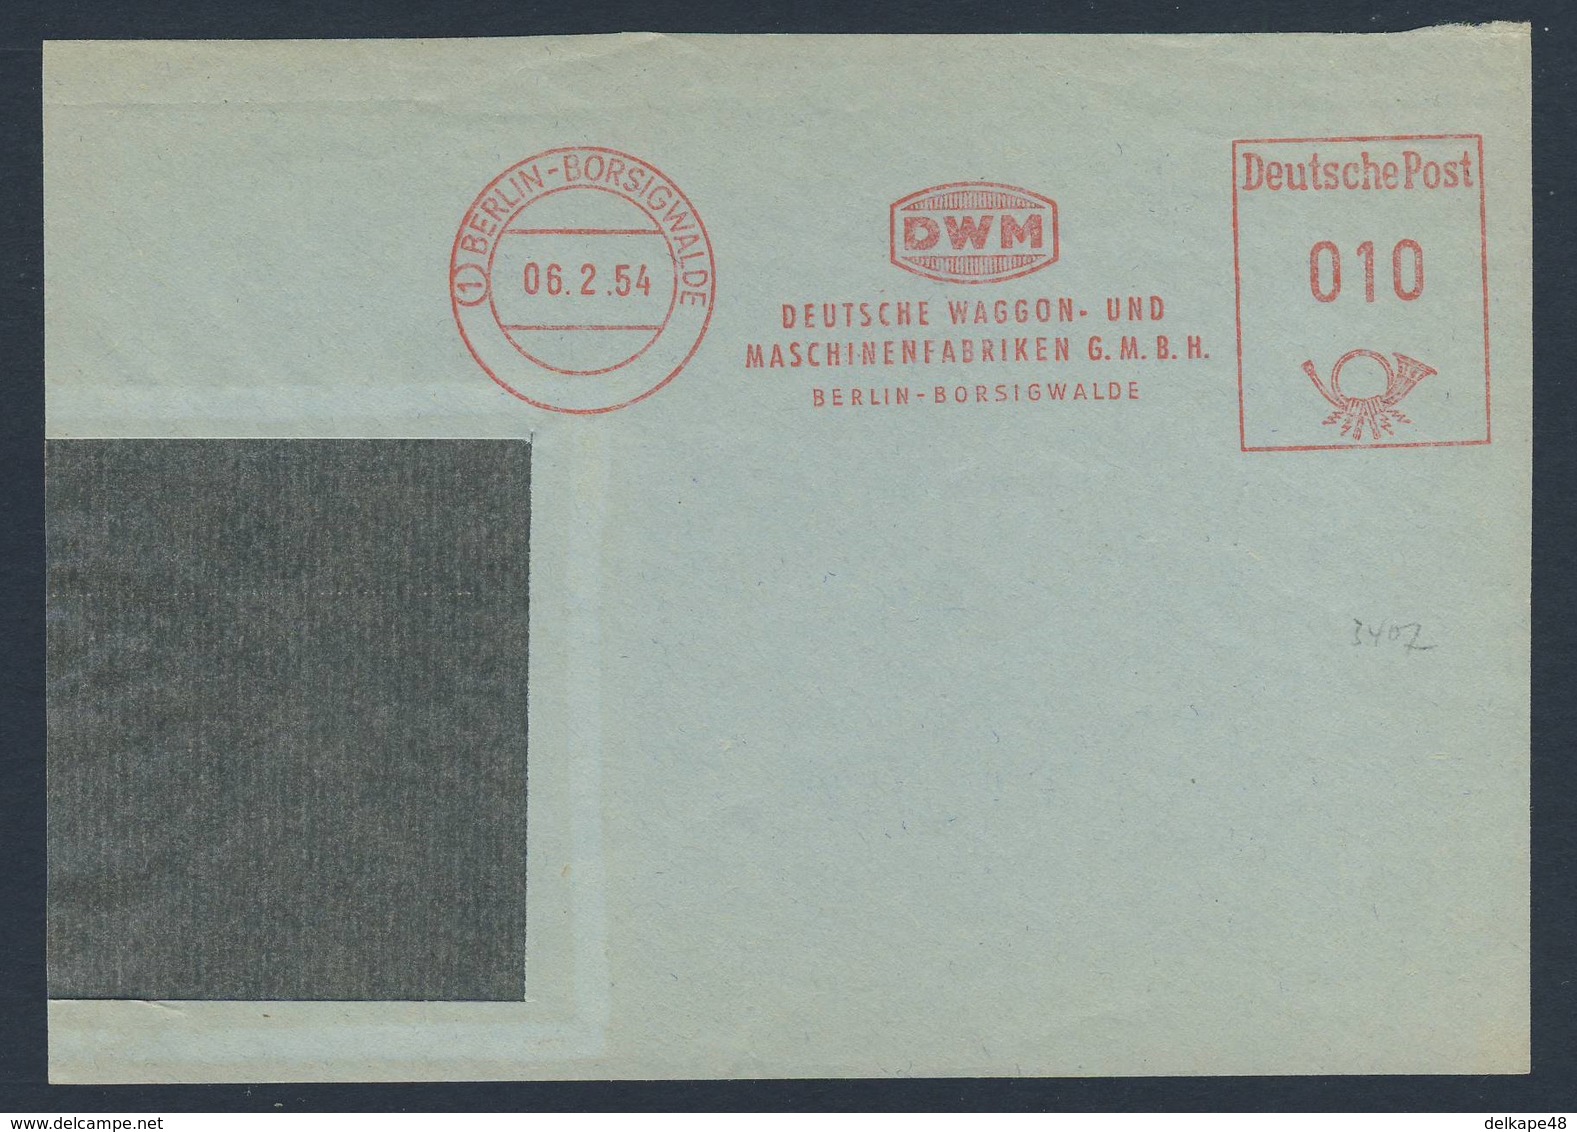 Deutschland Germany 1954 Adressband - DWM - Deutsche Waggon- Und Maschinenfabrik GMBH, Berlin-Borsigwalde - Treinen